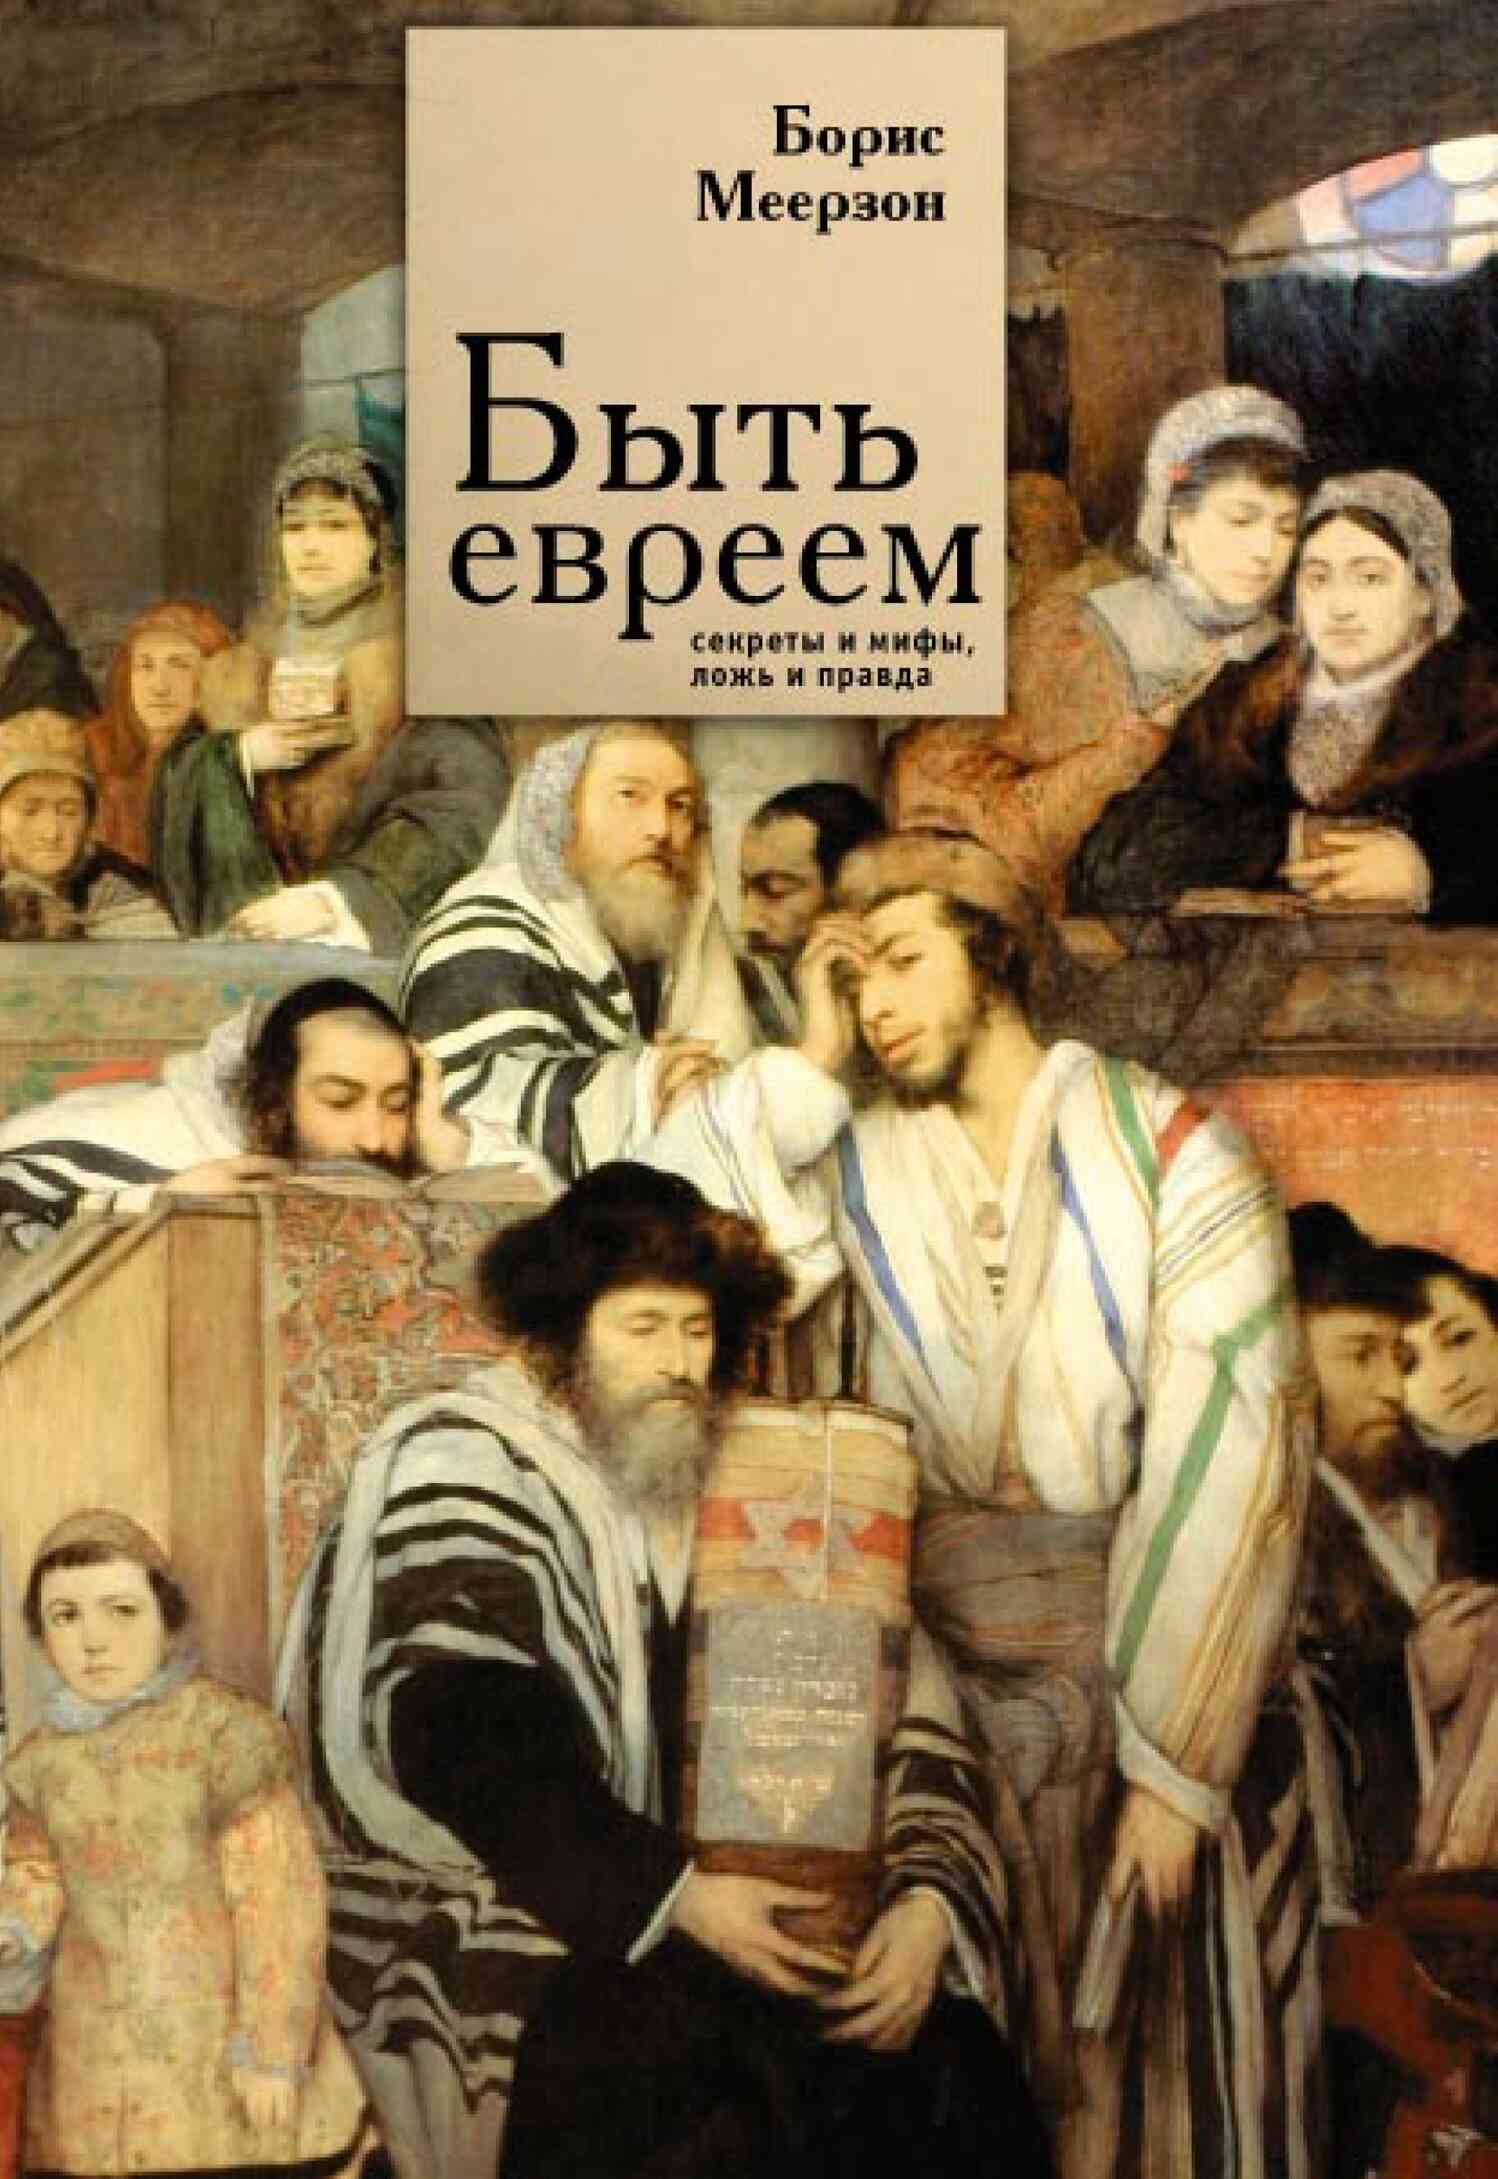 Меерзон Борис - Быть евреем: секреты и мифы, ложь и правда скачать бесплатно